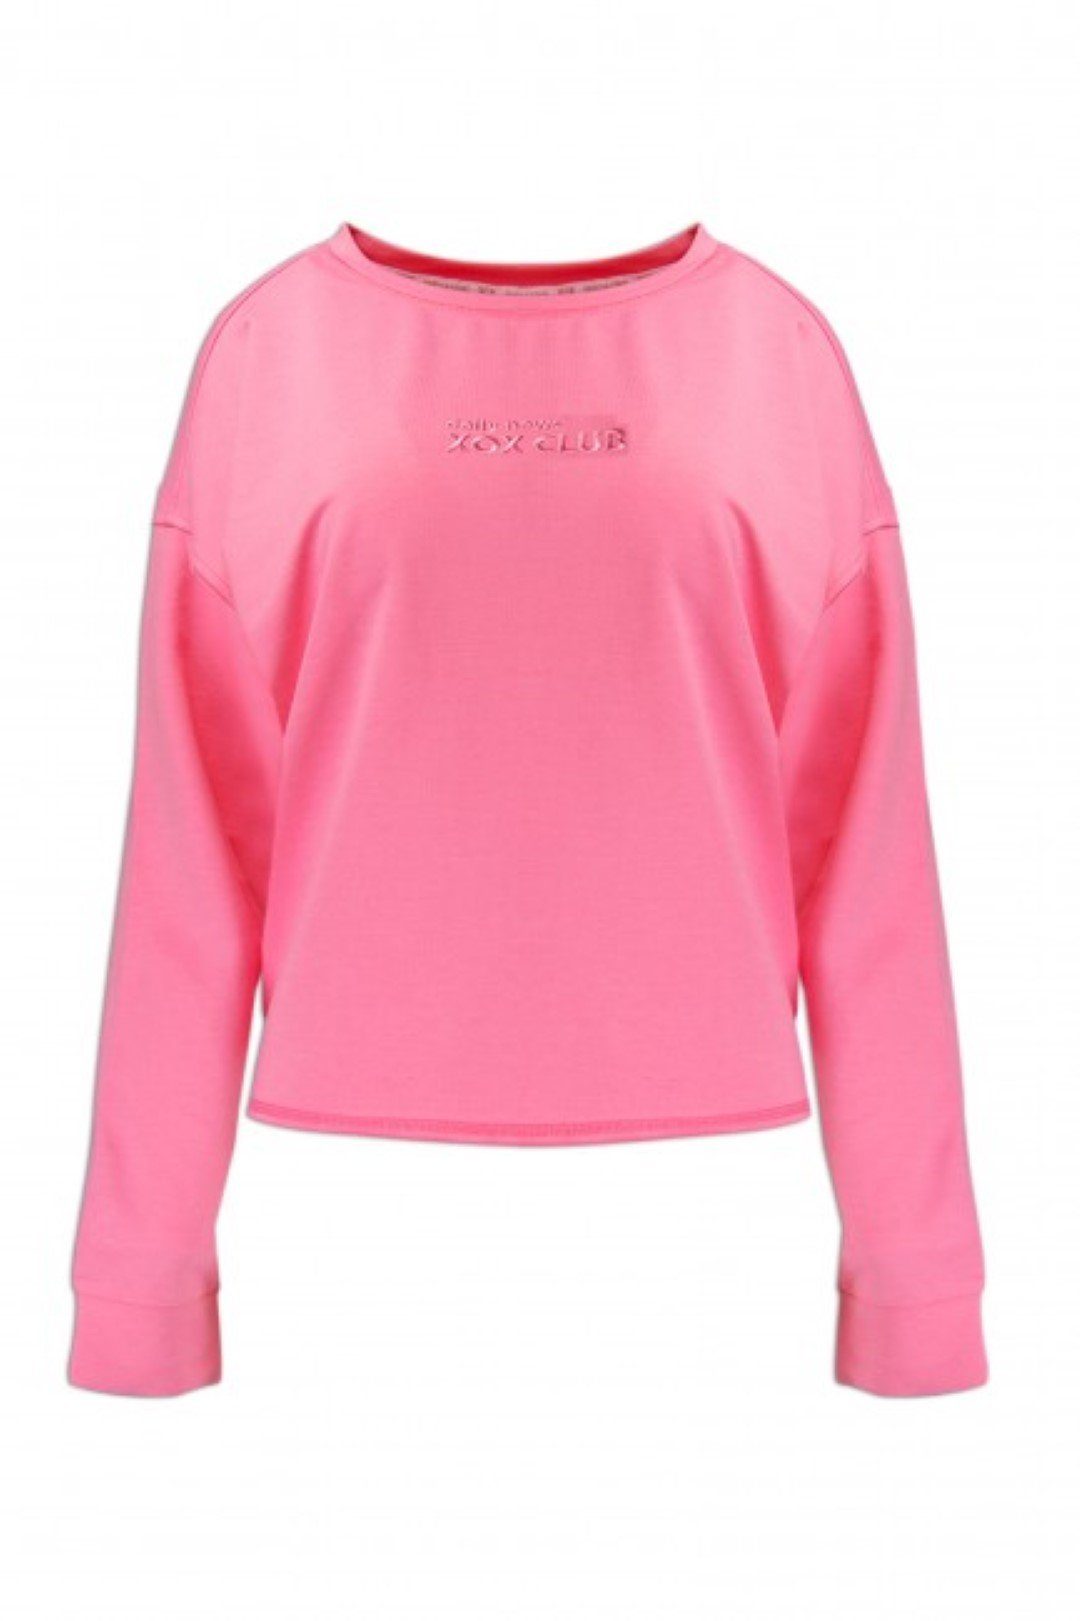 XOX Hoodie XOX Damenmode Oberteil, Shirt, pink Ausschnitt, Trade, Sweatshirt Fair U-Boot Longsleeve, 